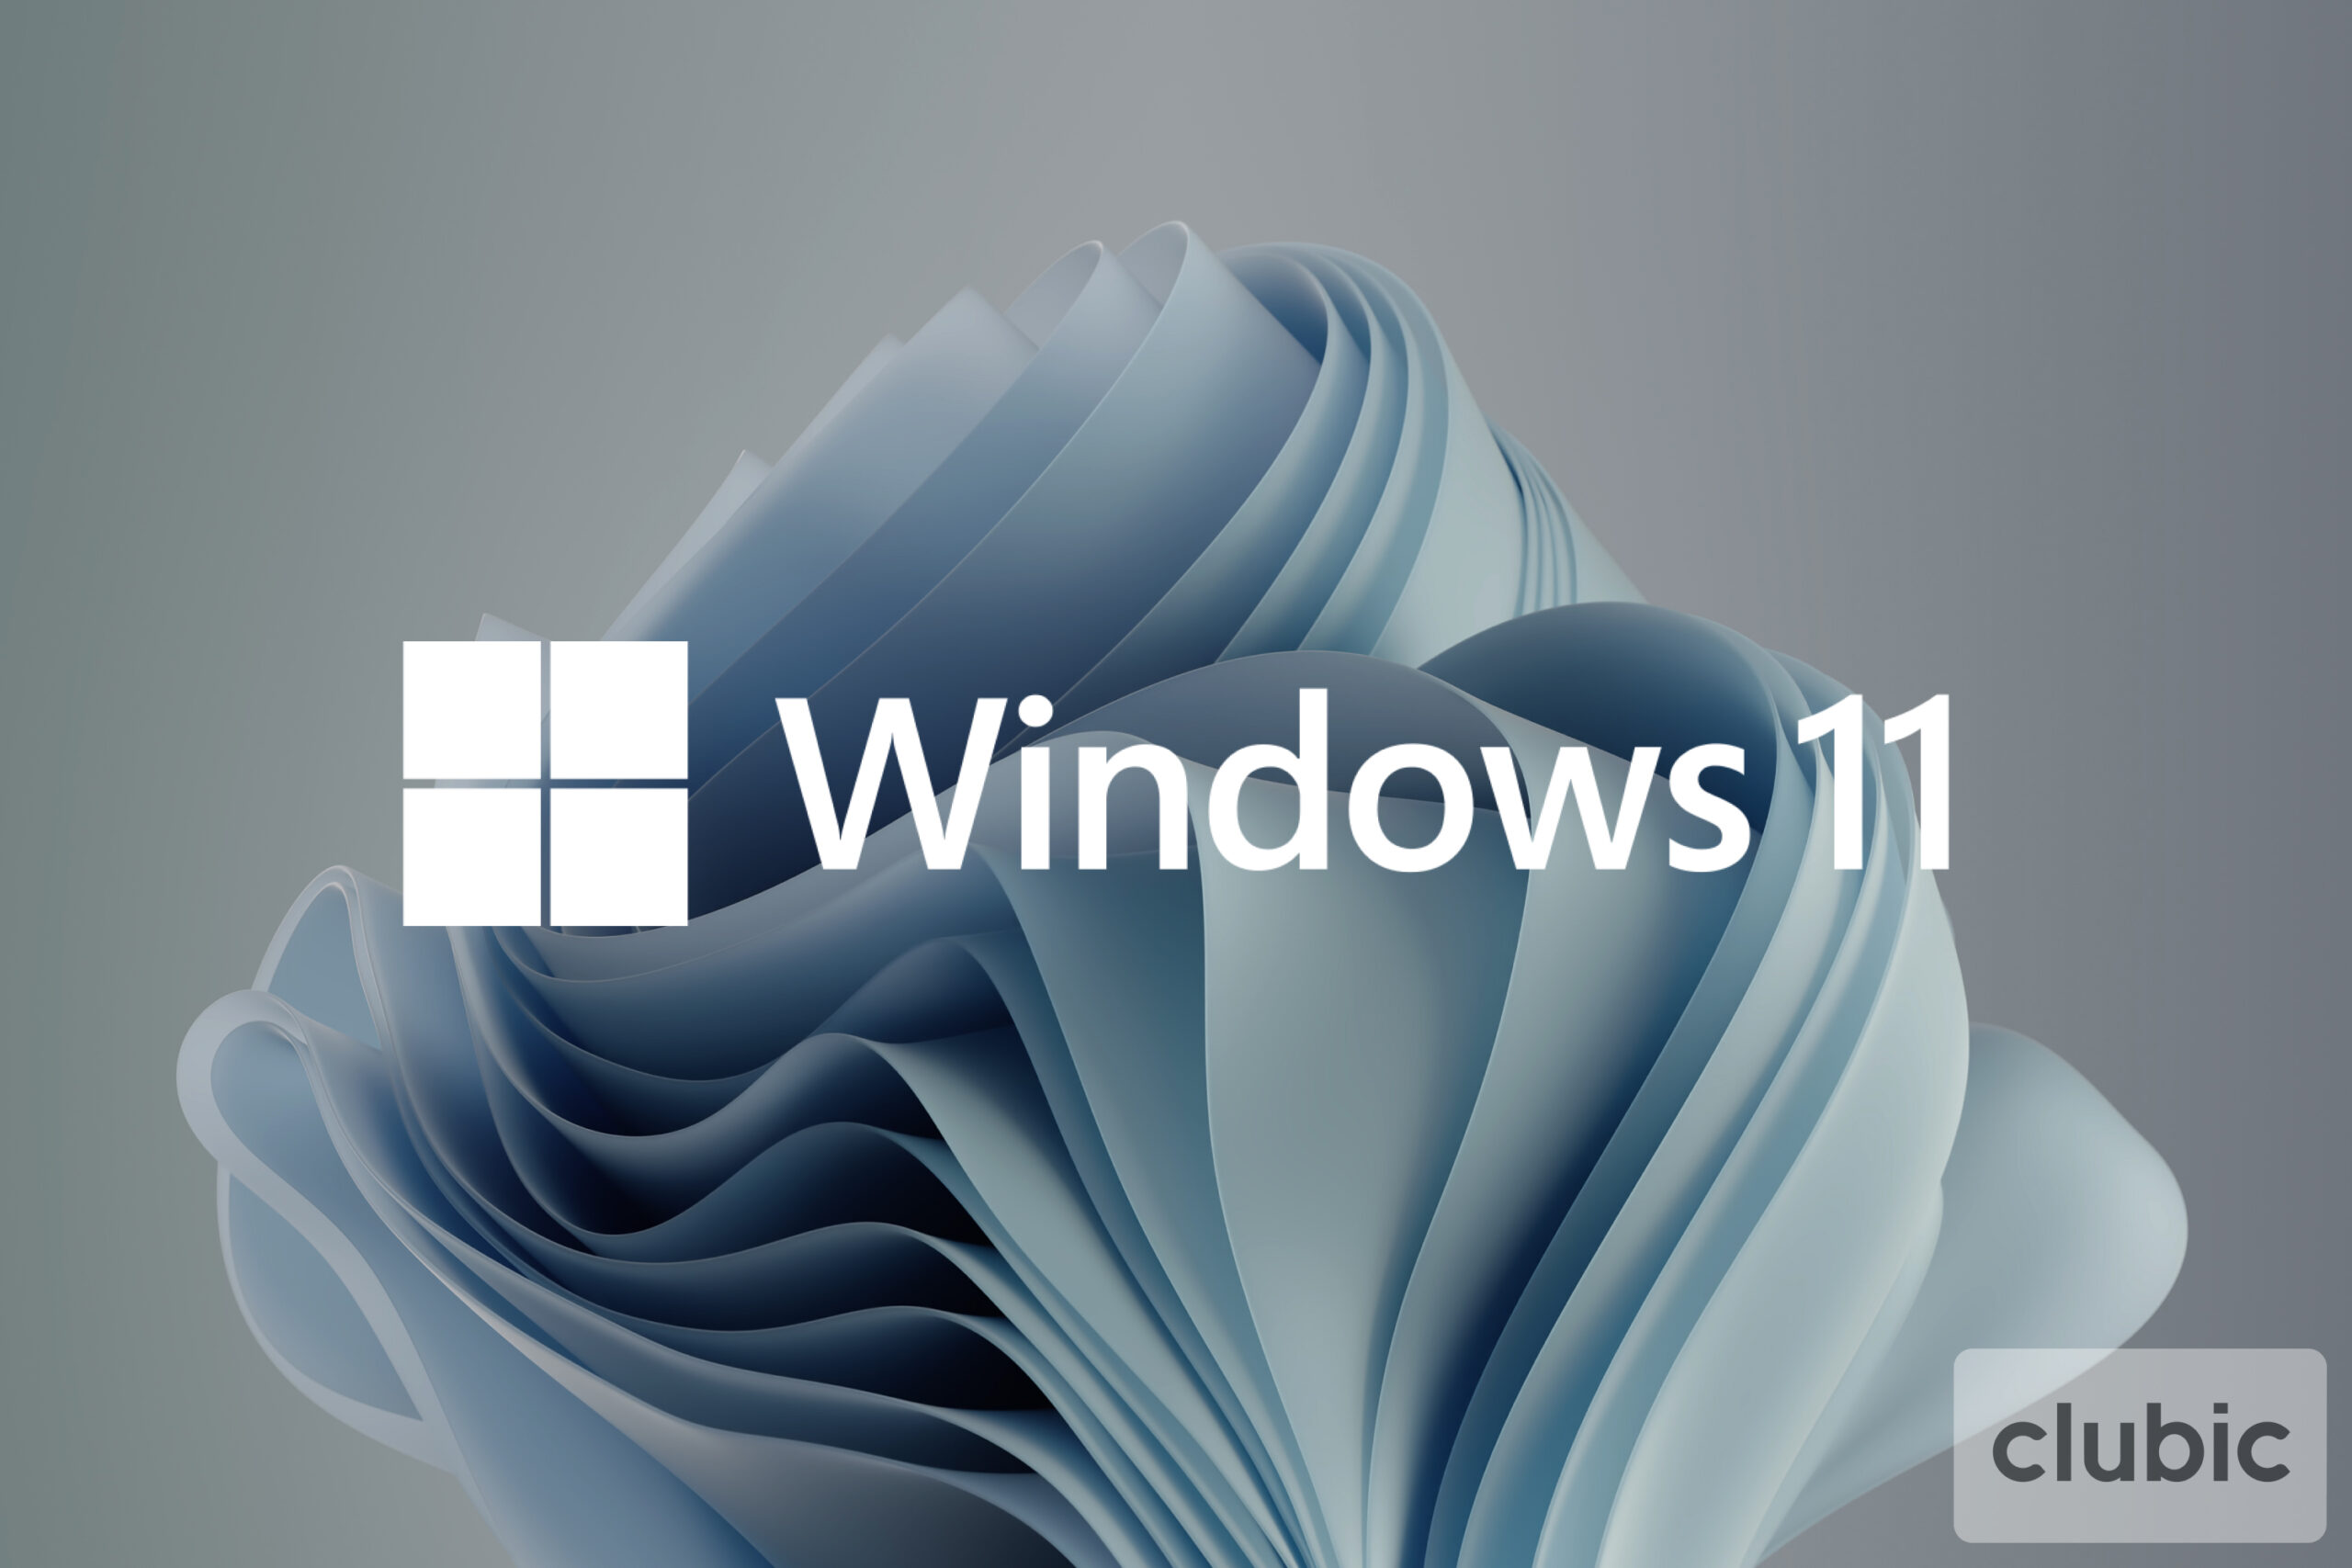 Windows 11: Linux môžete jednoducho nainštalovať cez... Microsoft Store 144